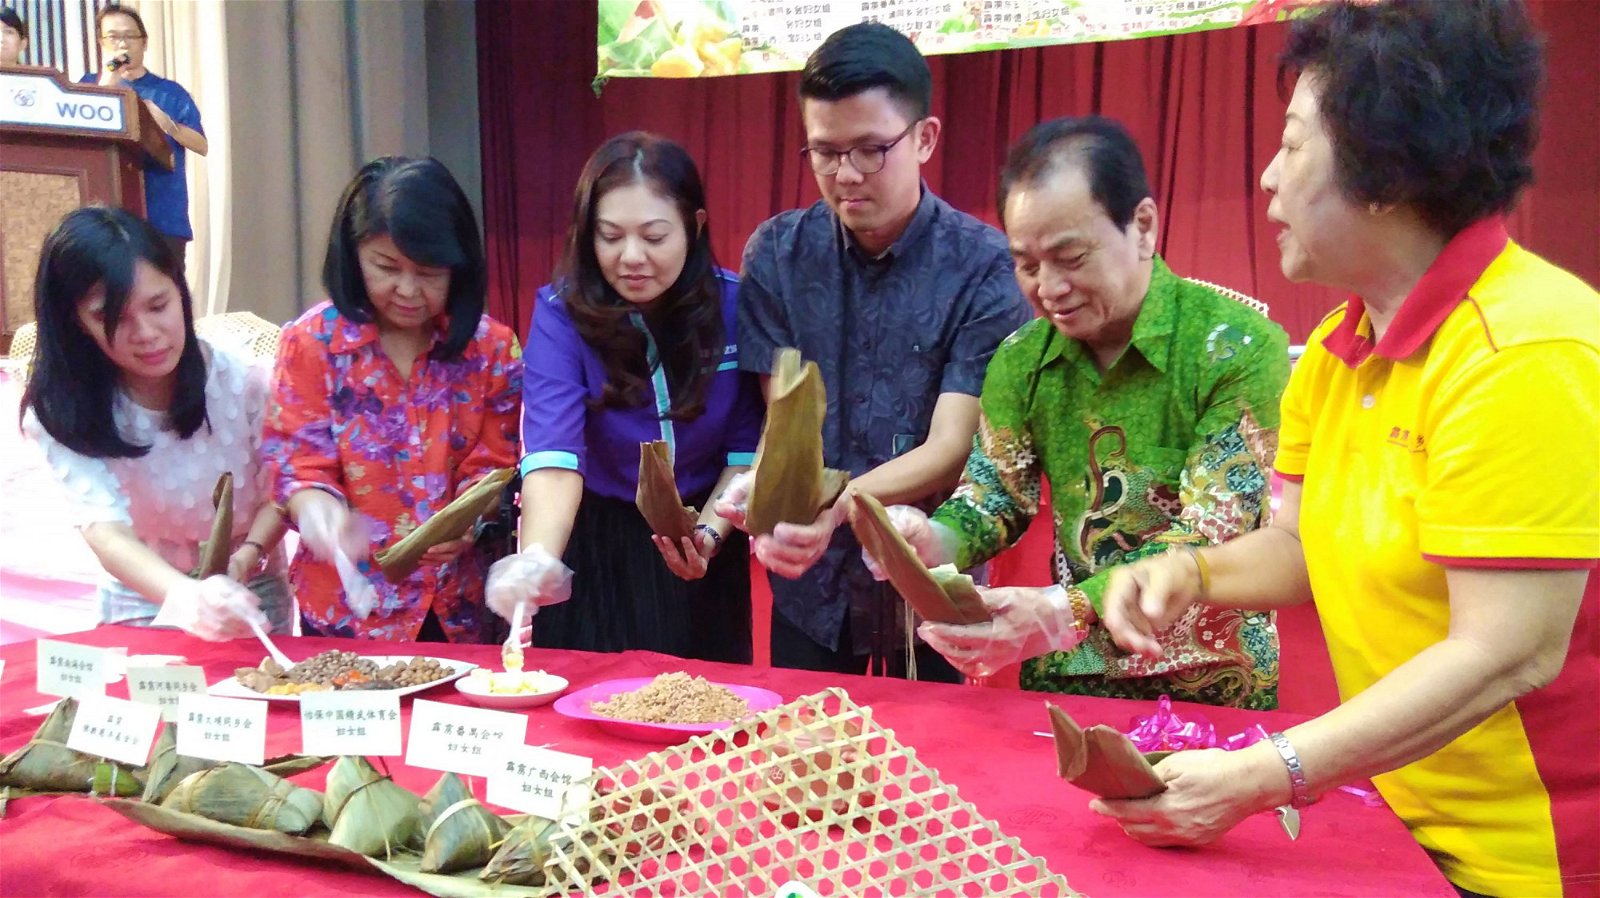 陈家兴（左4）在粽子文化交流会上亲自包粽，左起是张慧 莹、黄玉珠、唐佩娟及蔡文玉。